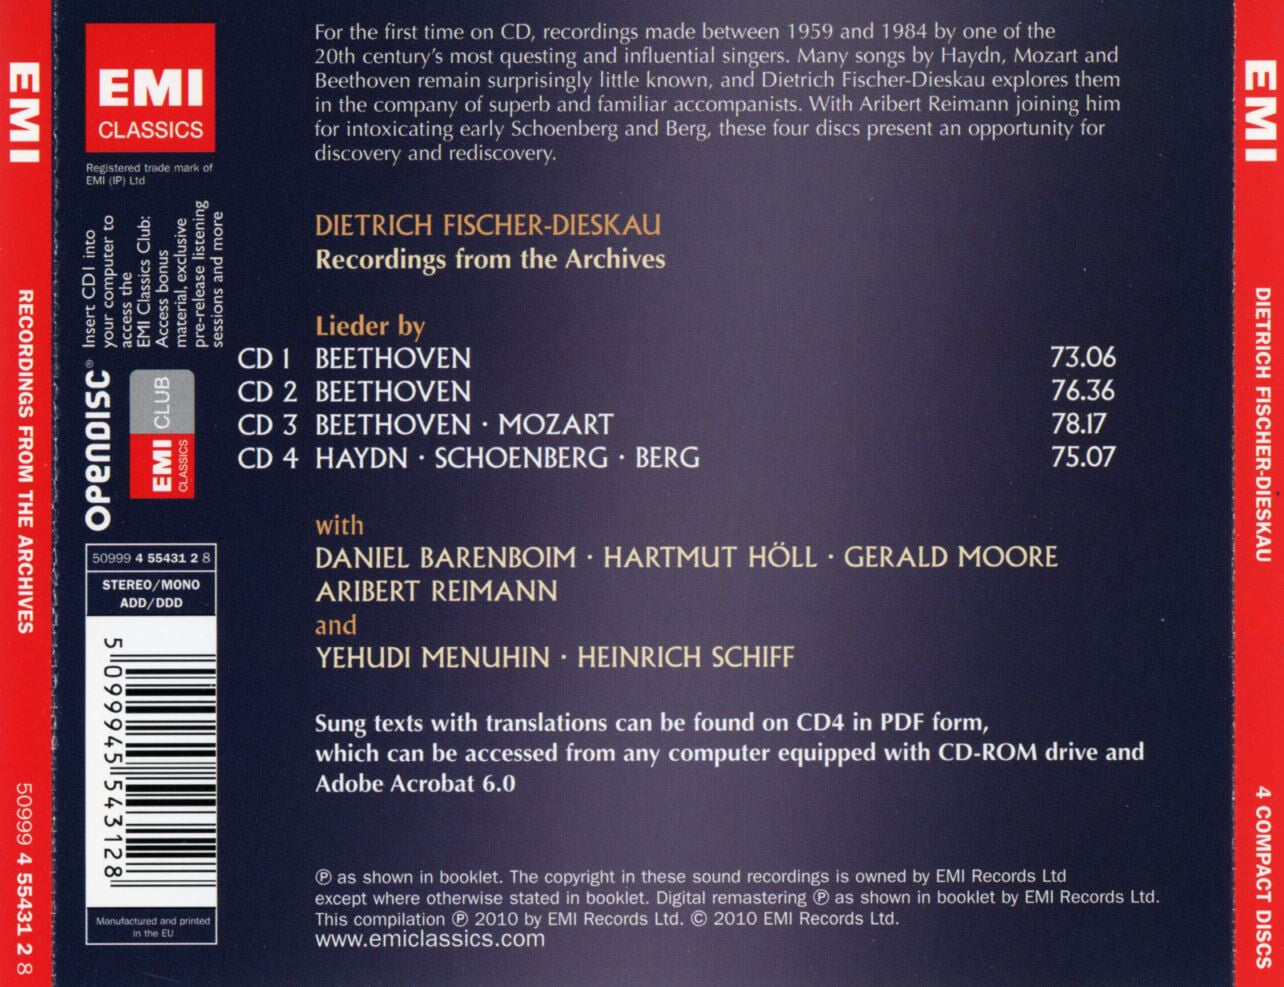 디트리히 피셔 디스카우 - Dietrich Fischer-Dieskau - Recordings From The Archives 4Cds [E.U발매]